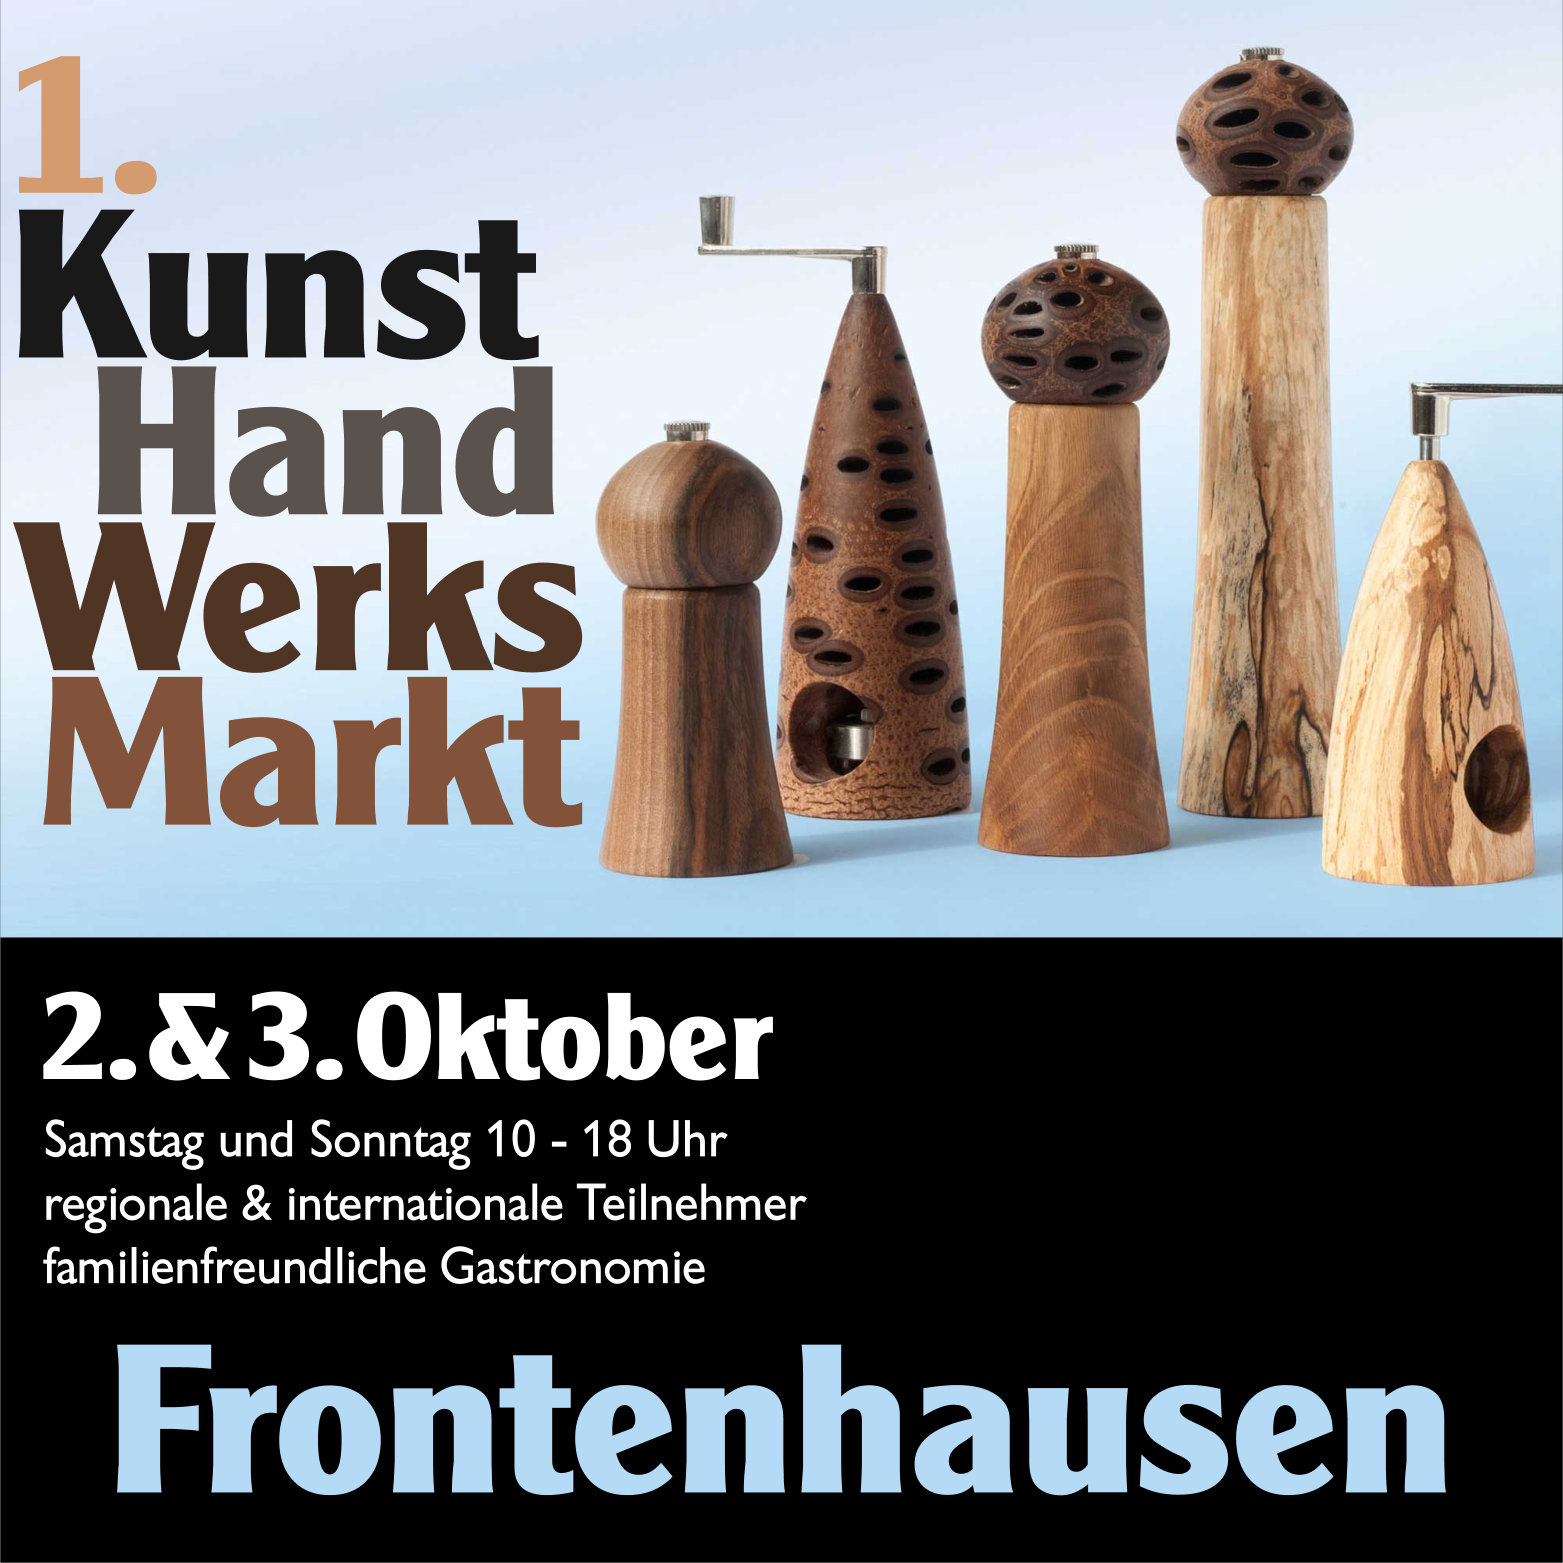 1. KunstHandWerksMarkt Frontenhausen, Oktober 2021